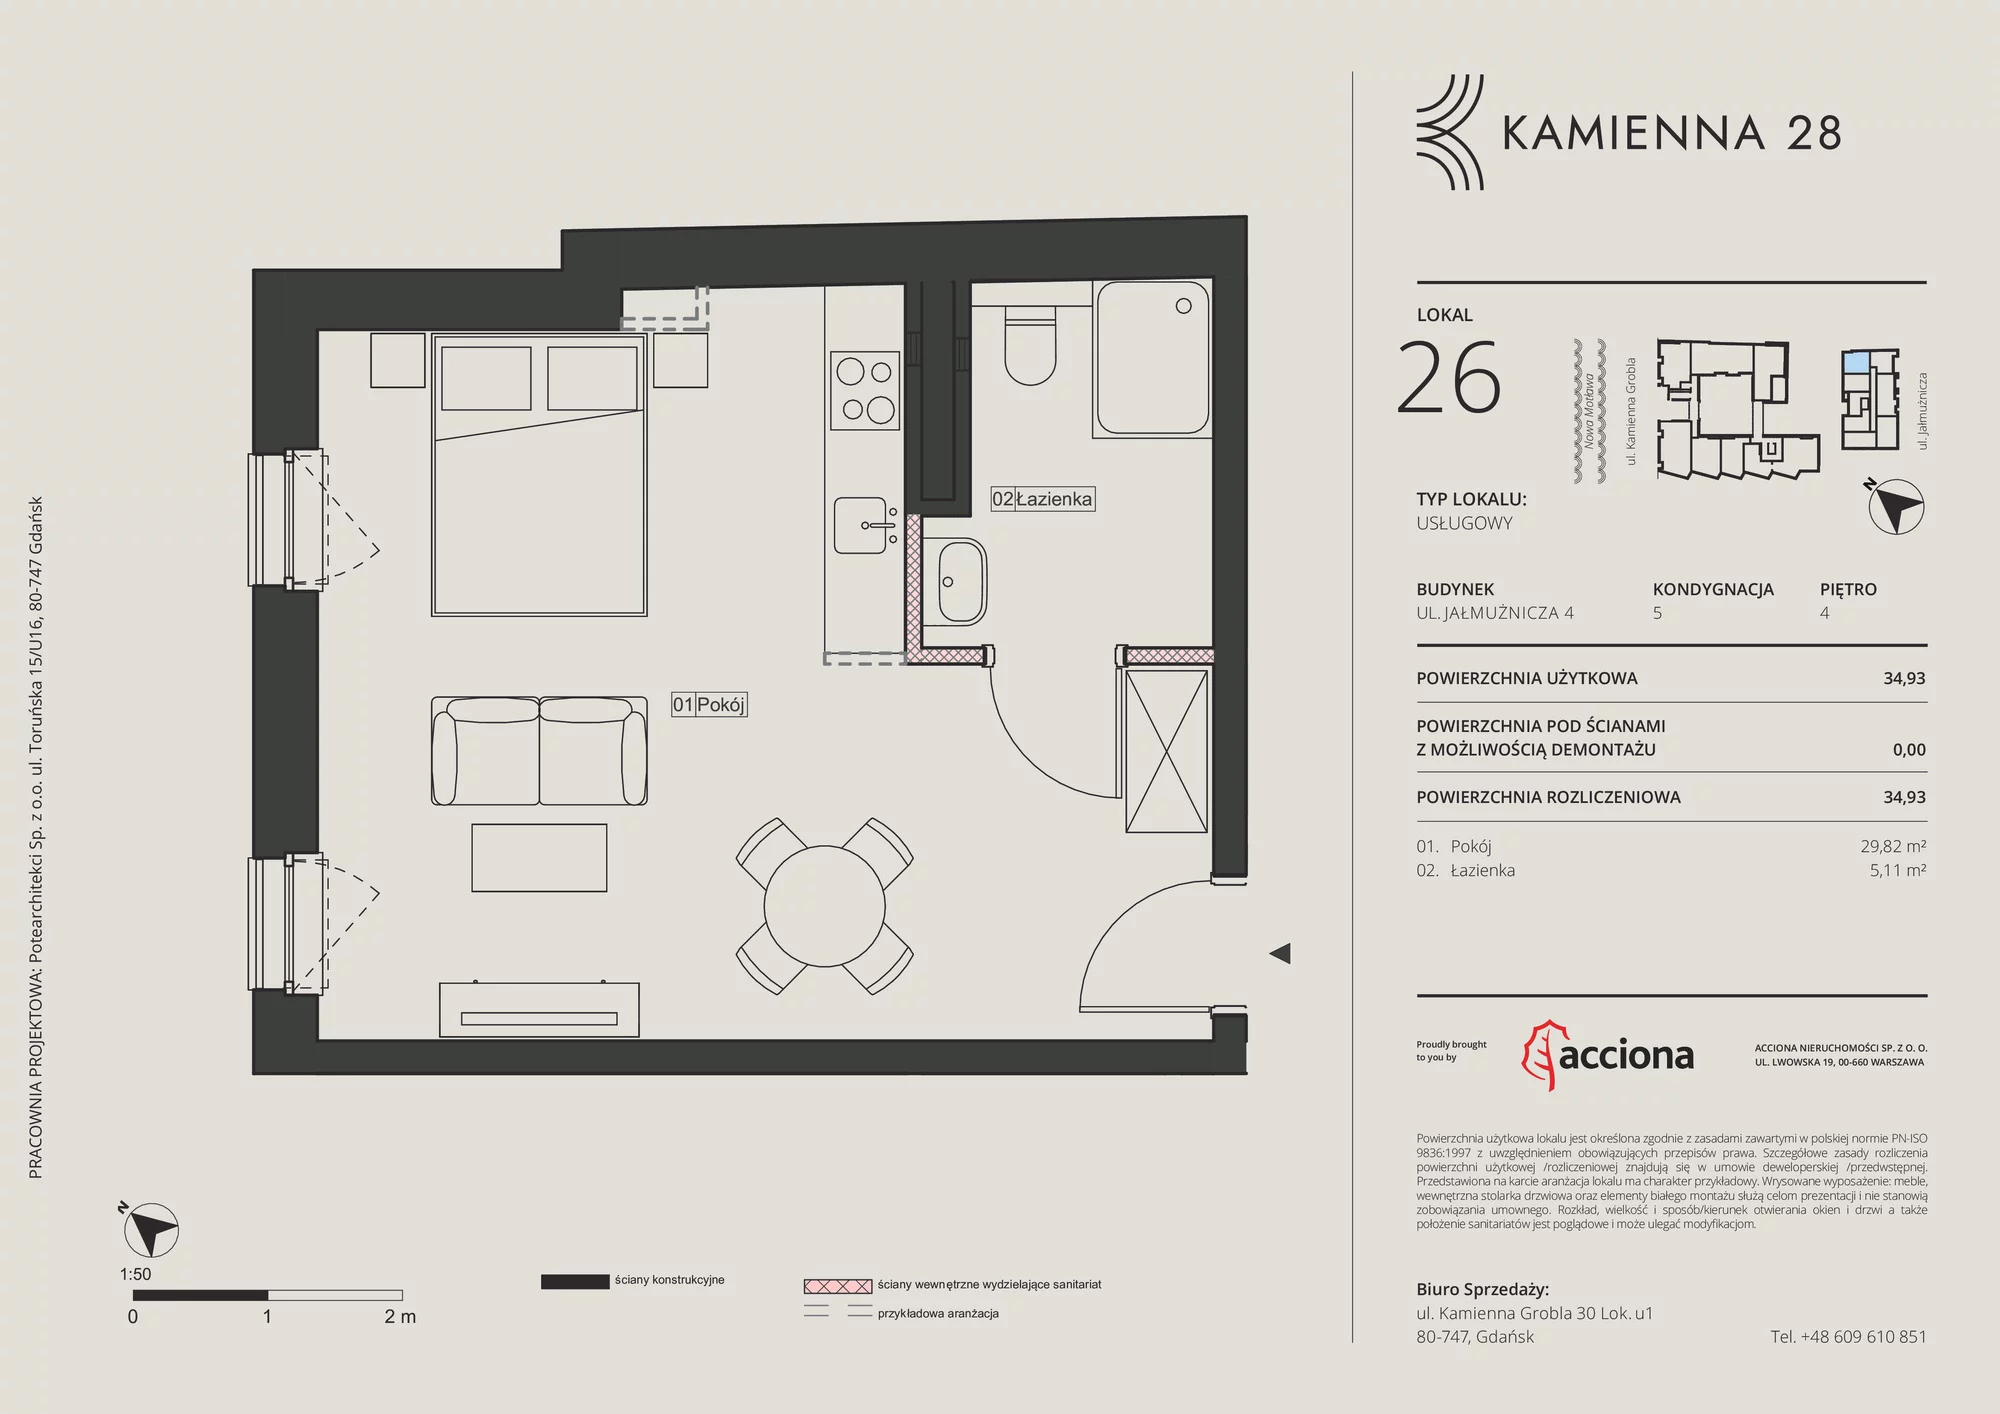 Apartament inwestycyjny 34,93 m², piętro 4, oferta nr 4.26, Kamienna 28 - apartamenty inwestycyjne, Gdańsk, Śródmieście, Dolne Miasto, ul. Jałmużnicza 4